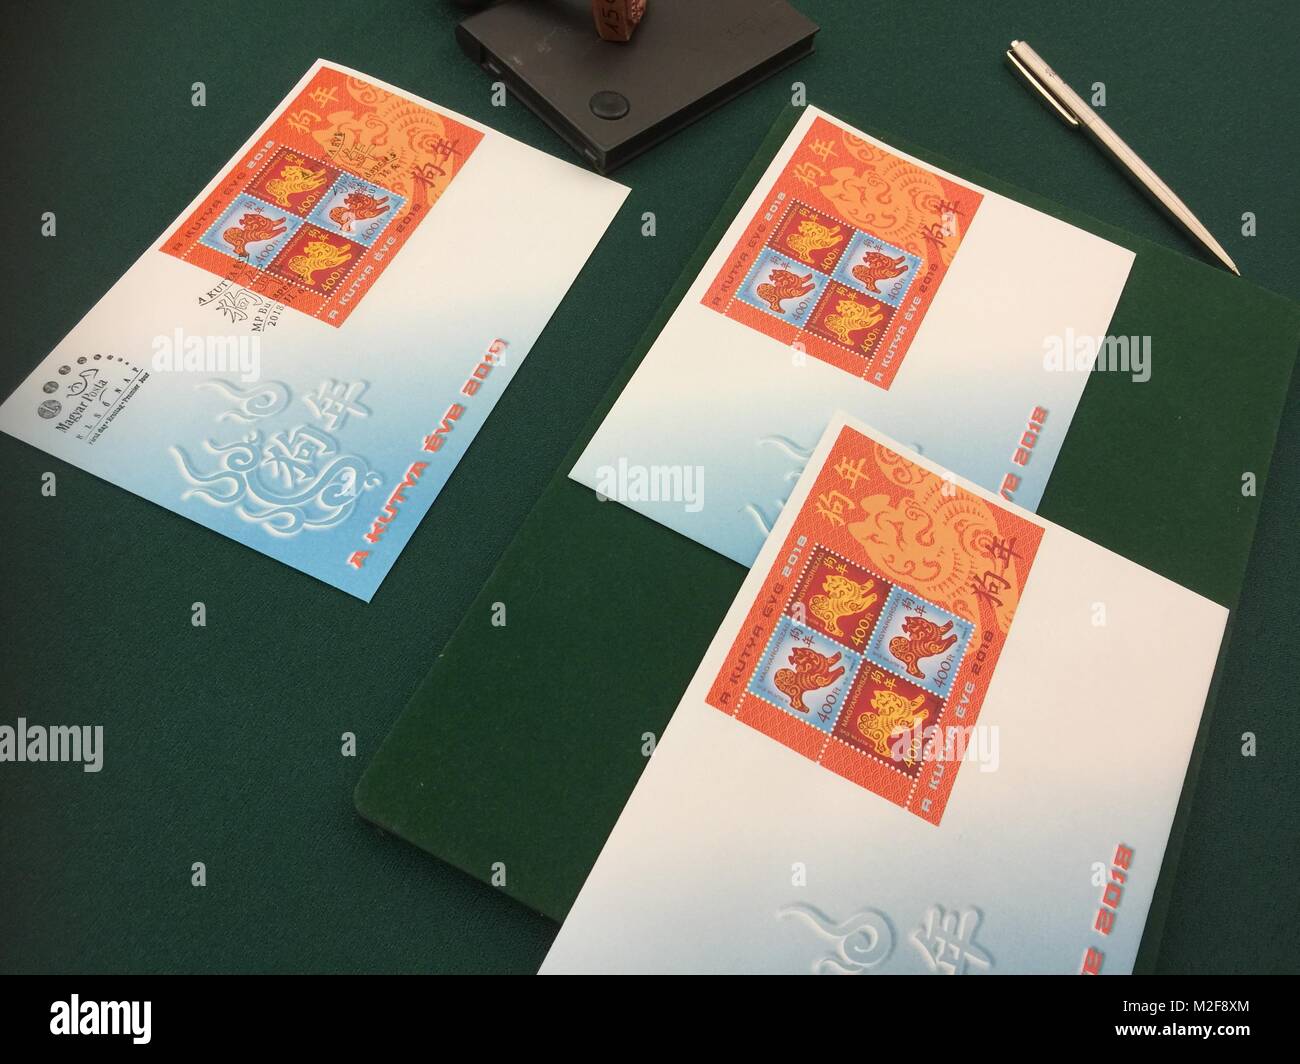 Budapest. Feb 6, 2018. Le premier jour sont vus sur une table au musée du timbre hongrois à Budapest, Hongrie le 6 février 2018. Le zodiac timbre émis par la poste hongroise en l'honneur de l'année chinoise du chien a été présenté au public dans le musée du timbre Hongrois ici mardi. C'est la cinquième édition d'un timbre Hongrois commémorant le Nouvel An chinois depuis la première a été publié en 2014, l'année du cheval. Crédit : Yang Yongqian/Xinhua/Alamy Live News Banque D'Images